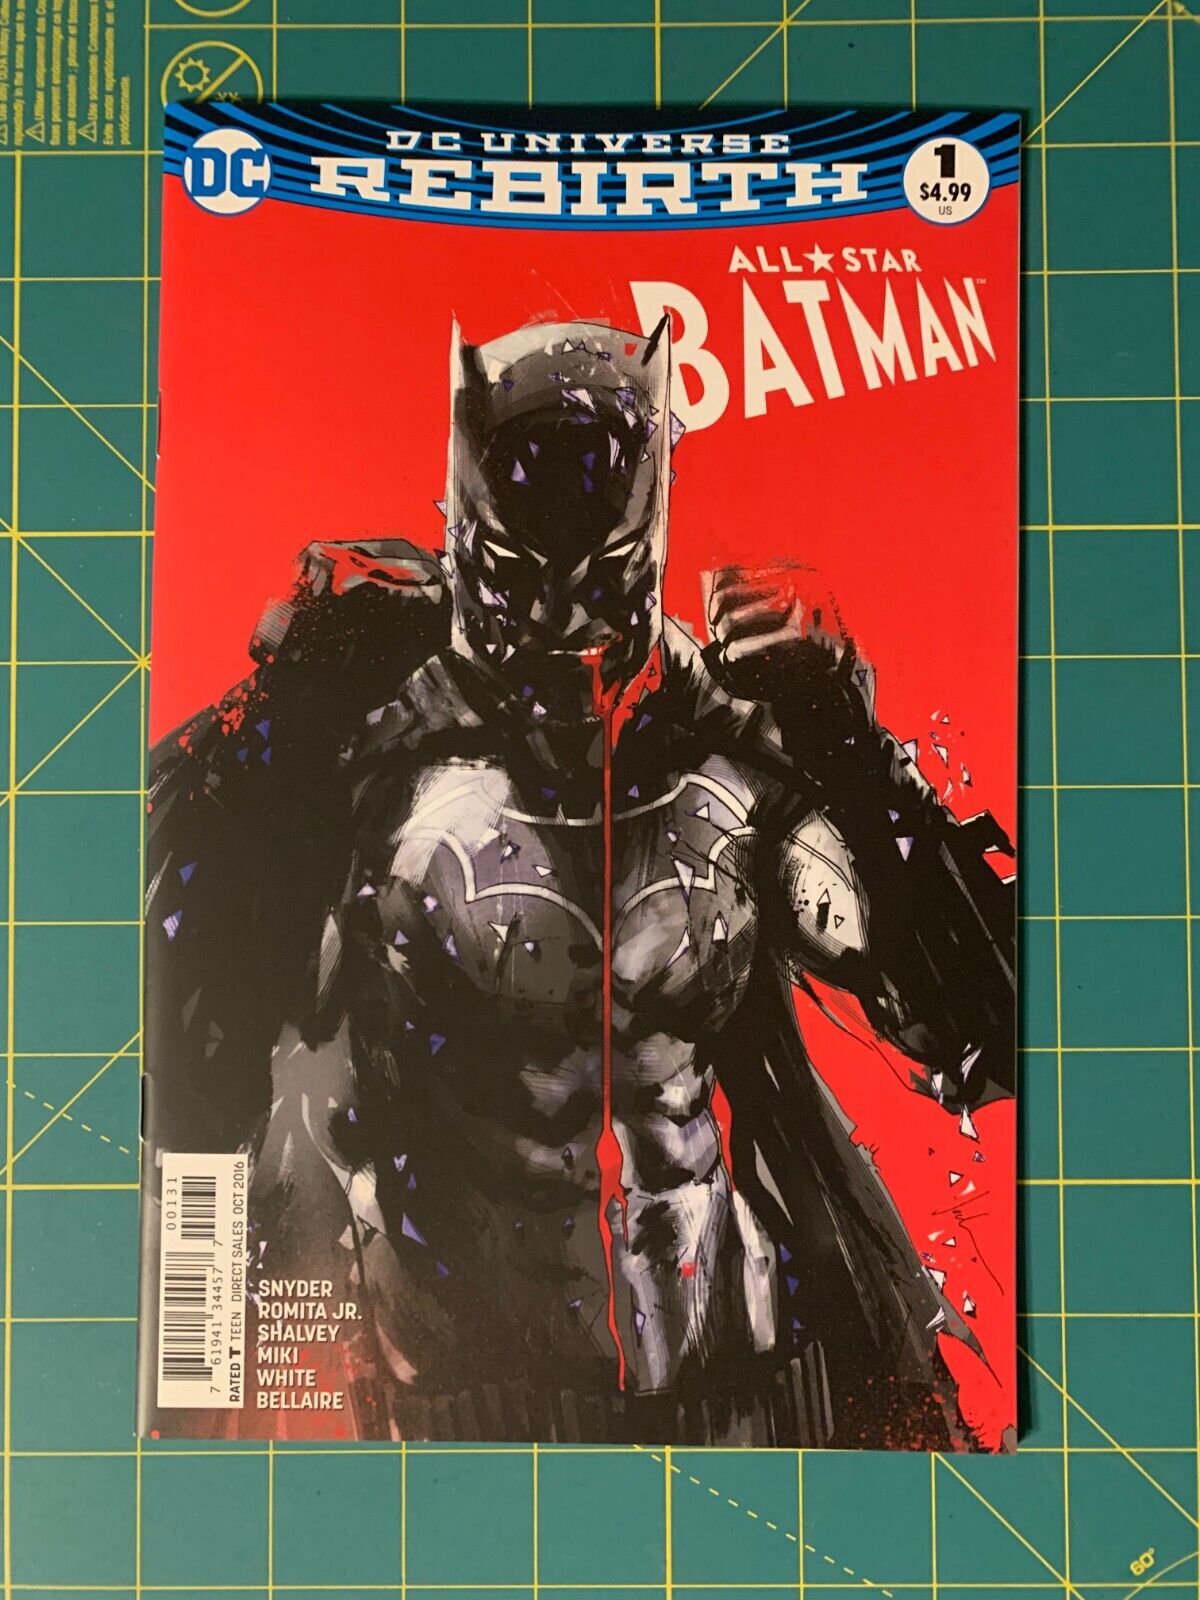 All-Star Batman #1 - Oct 2016 - Jock Variant Cover - (081A)